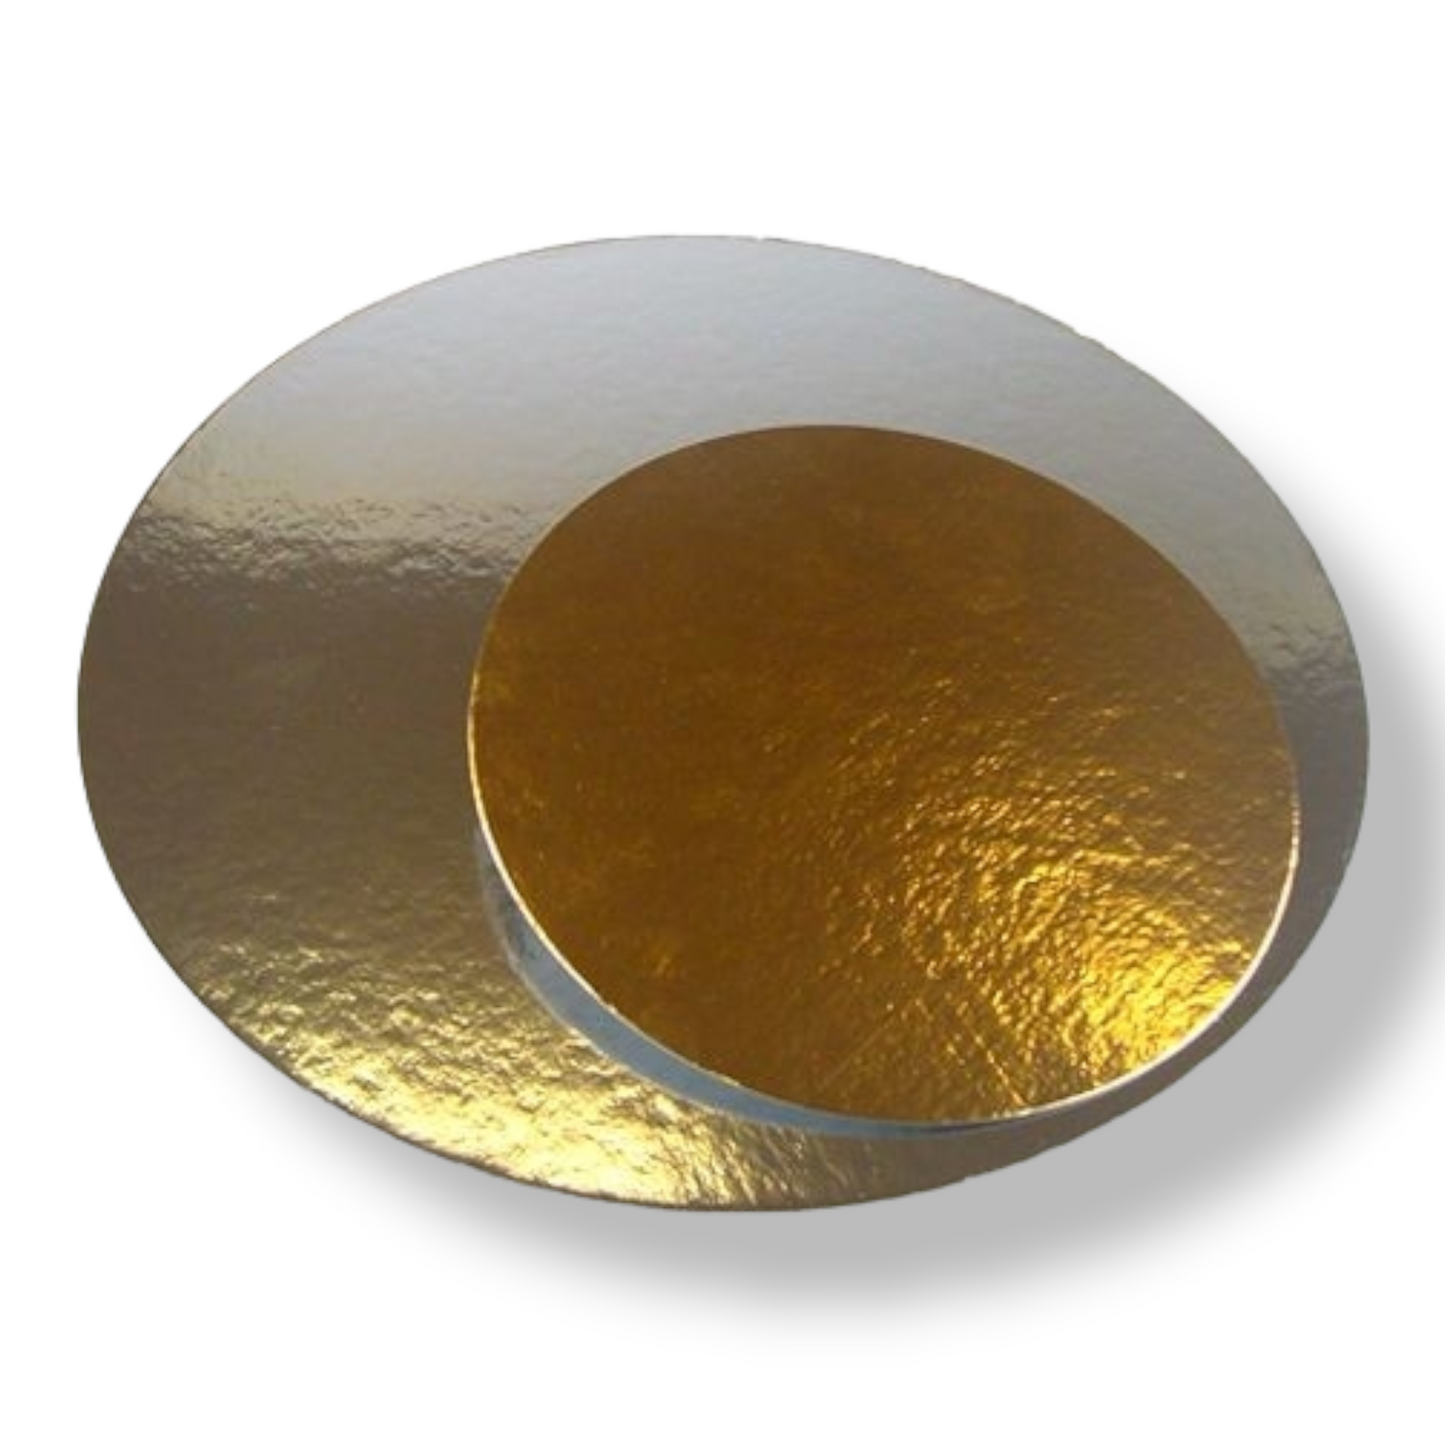 Tortenunterlagen Silber/Gold Rund 26cm/3 Stk.